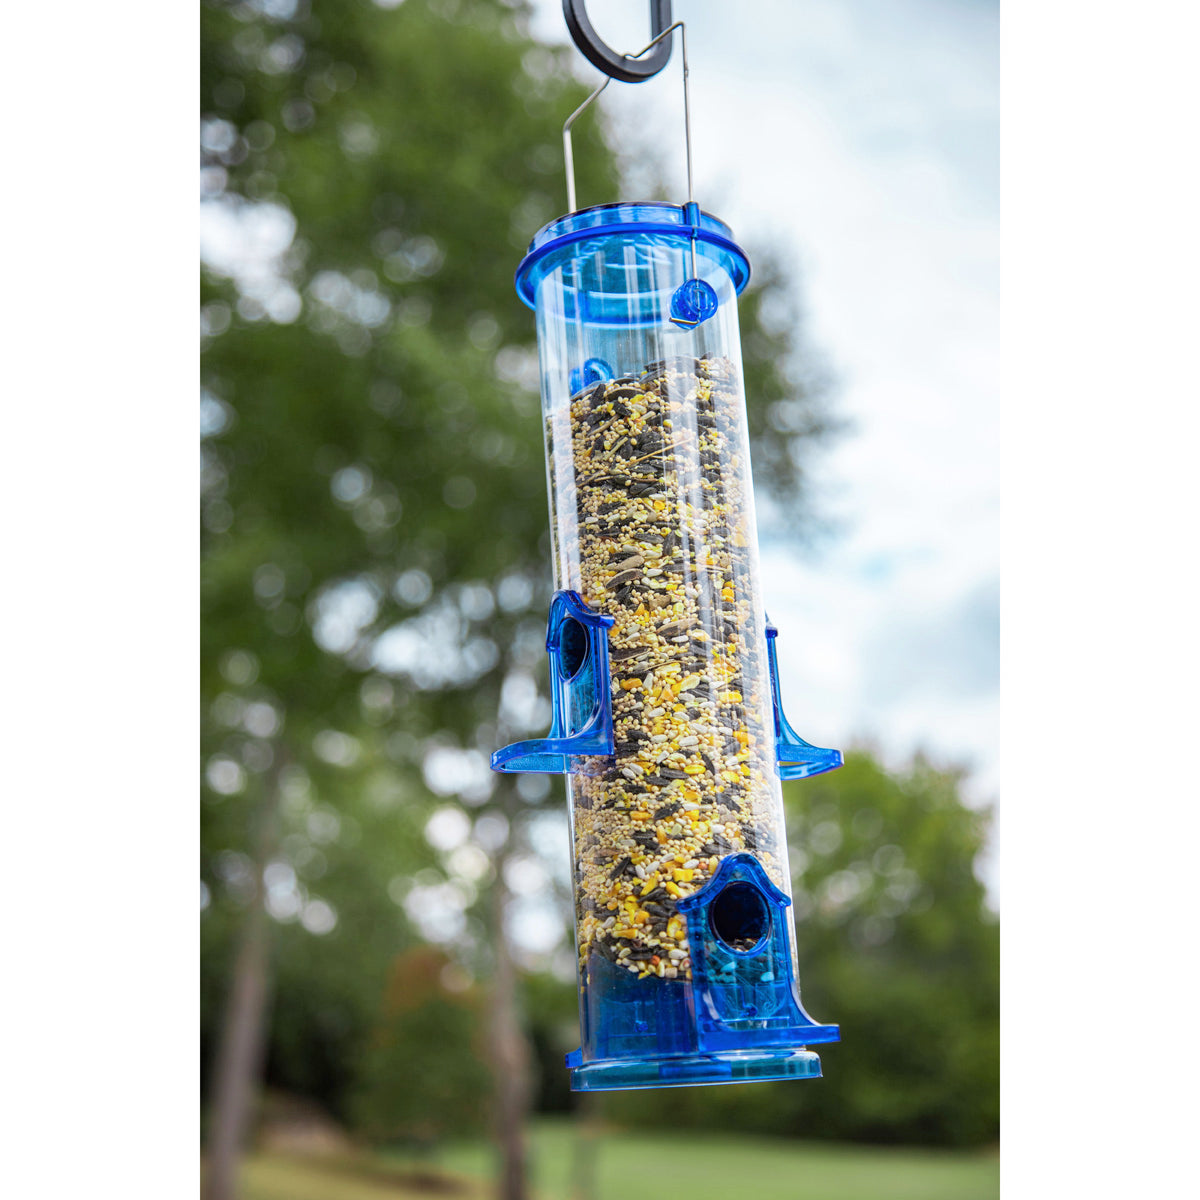 Premier Wild Bird Feeding Station w/Bird feeders & Squirrel Baffle